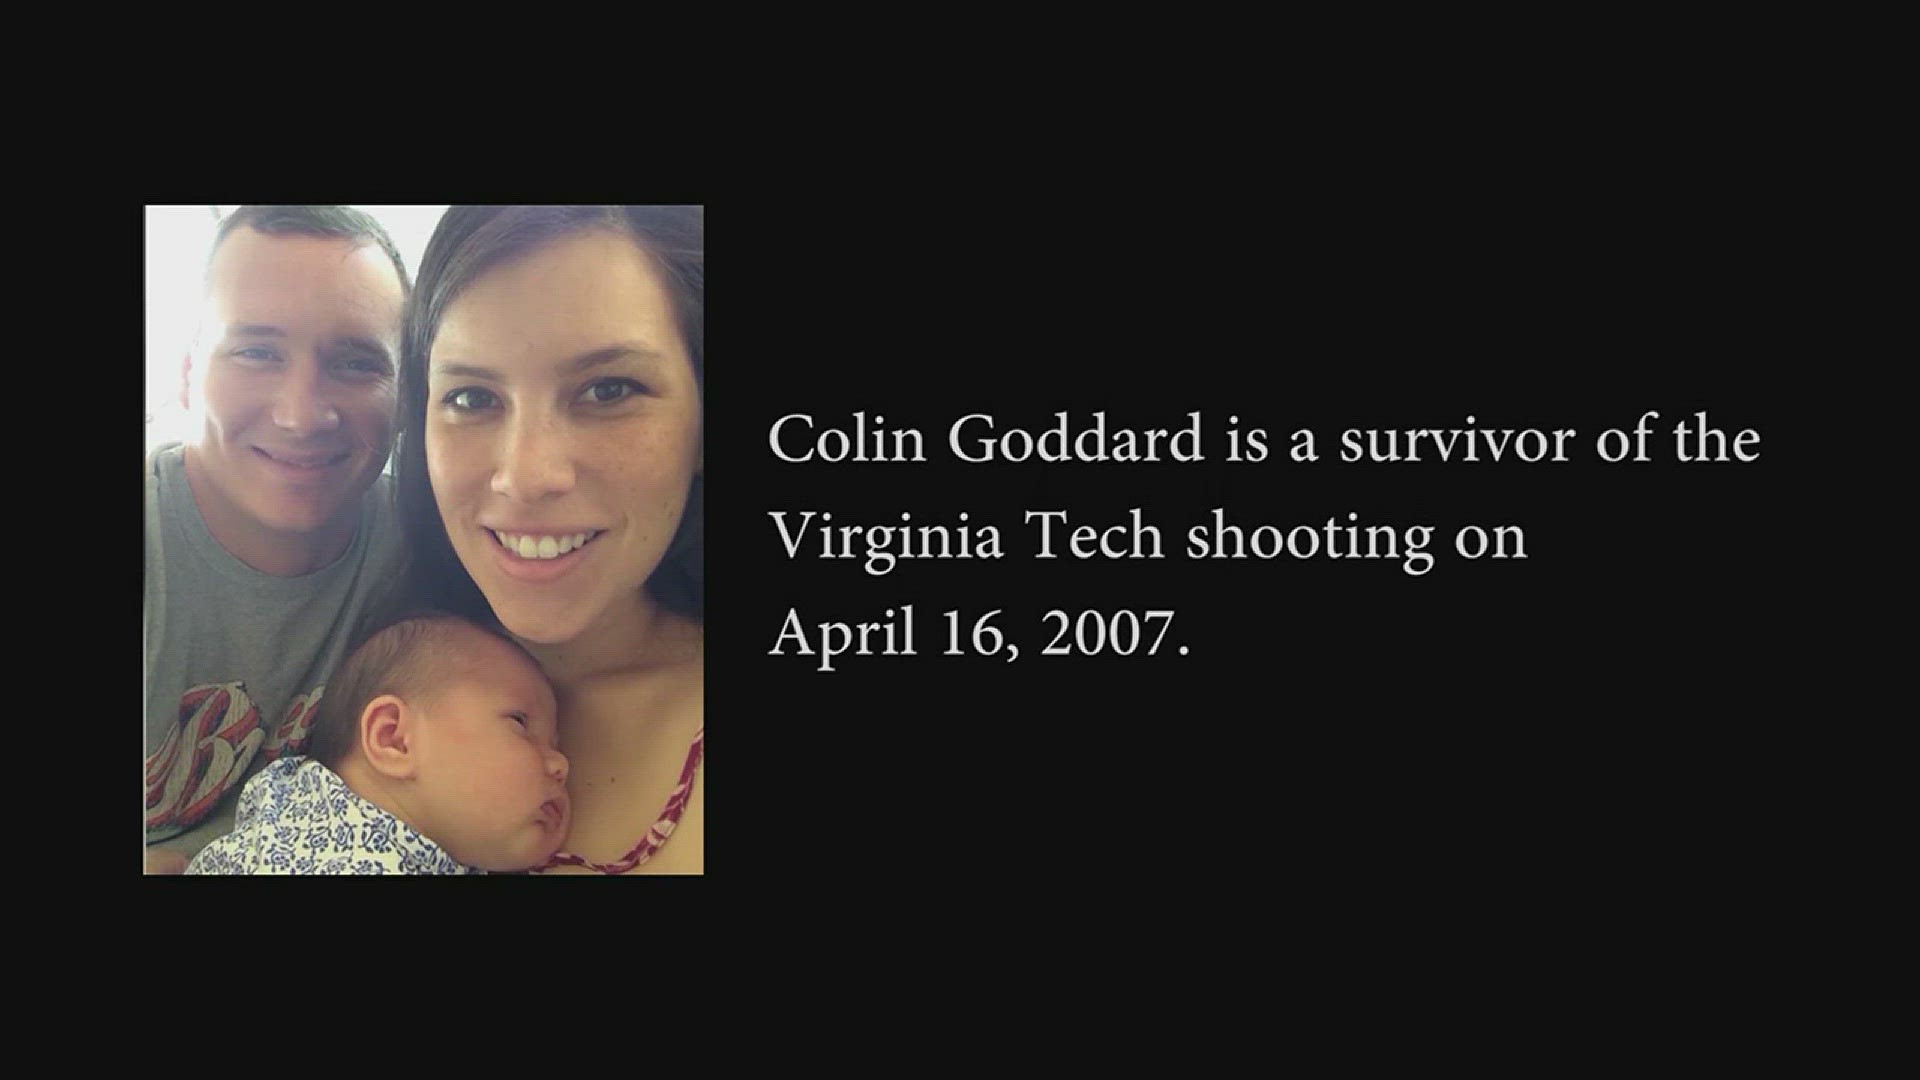 Though The Eyes Of A Survivor, Virginia Tech Shooting